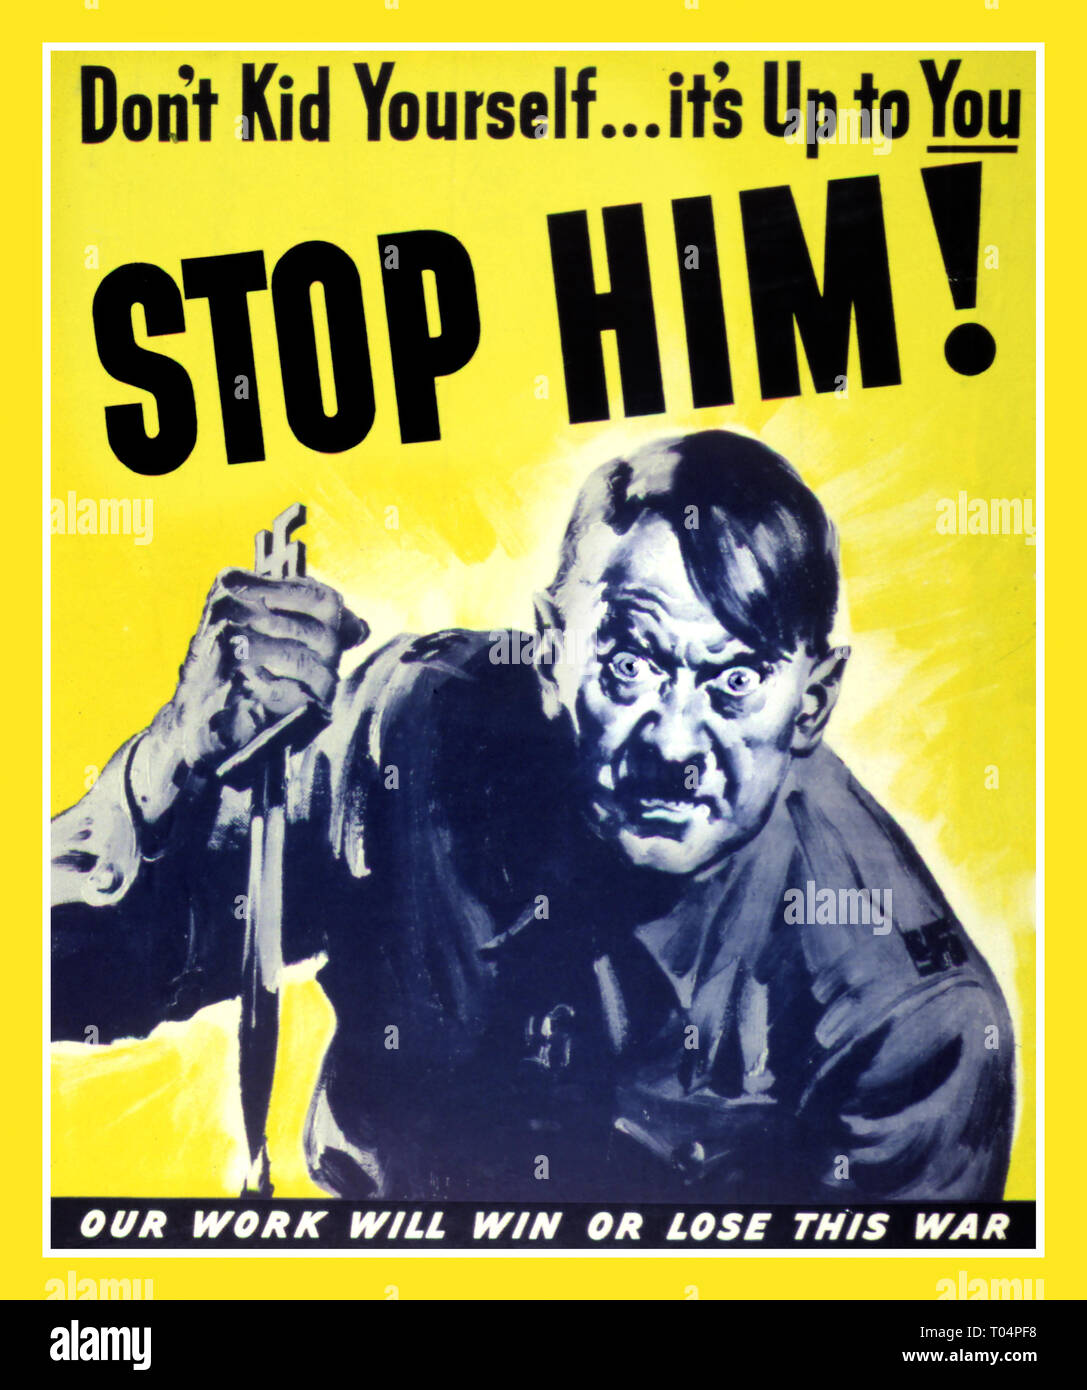 WW 2 ADOLF HITLER in Dämonische Raserei mit Blutverschmierten Dolch WWII Propaganda Poster Anti-Nazi Deutschland "Nicht Zicklein sich ... es ist bis zu Ihnen... ihn stoppen!" "Unsere Arbeit wird diesen Krieg gewinnen oder verlieren" 1943 Weltkrieg 2 Stockfoto